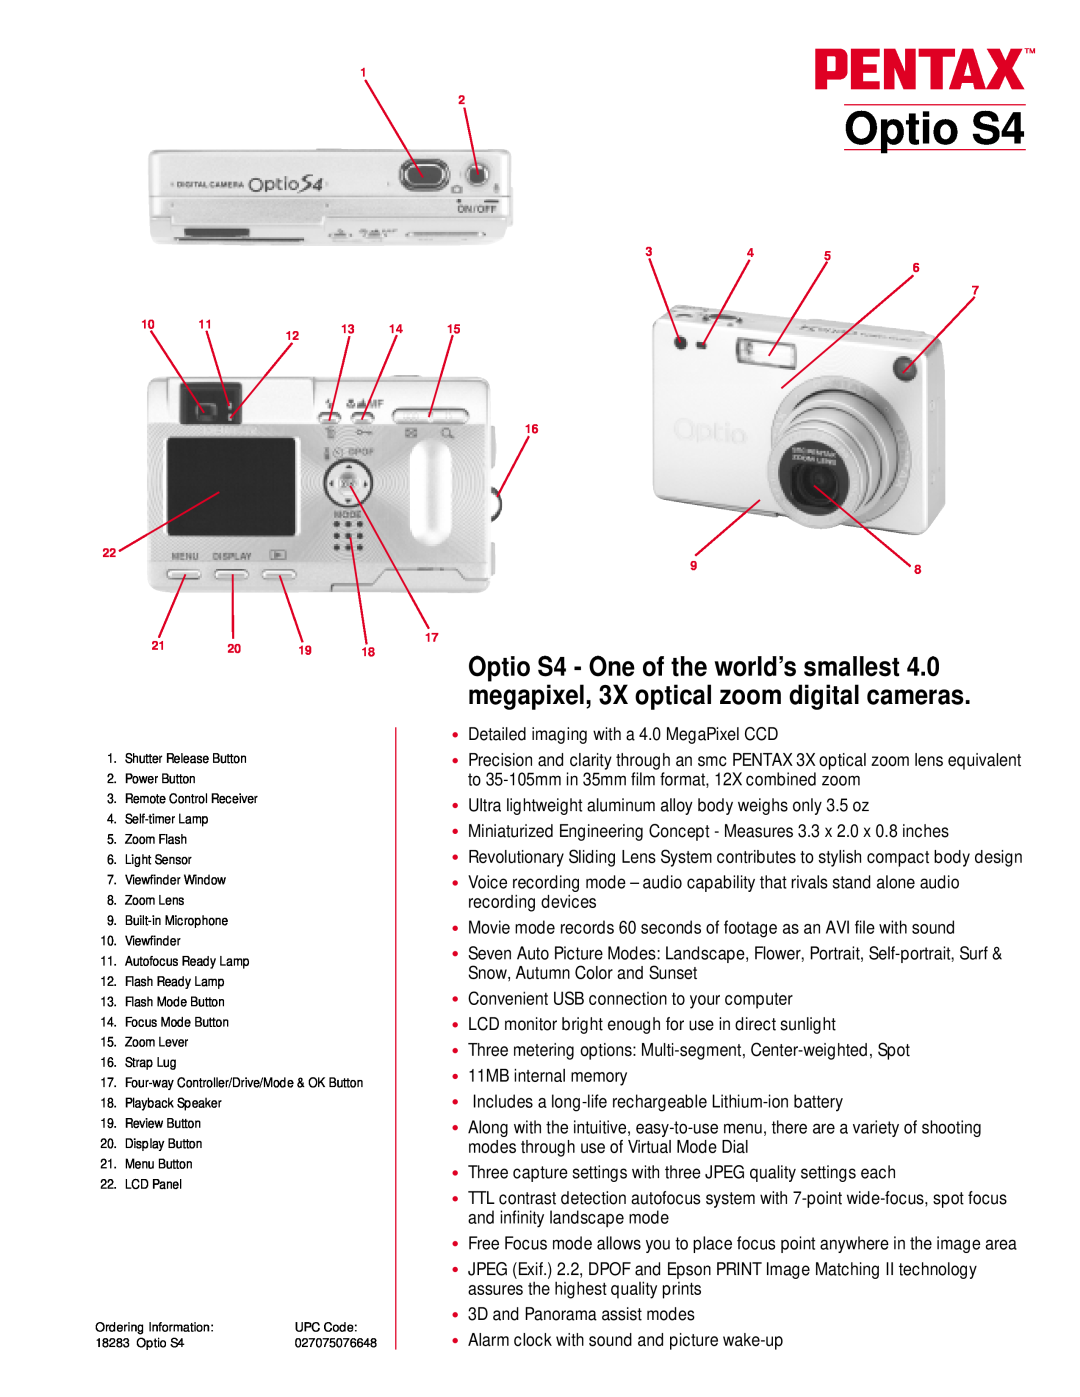 Pentax S4 manual Operating Manual, Digital Camera 